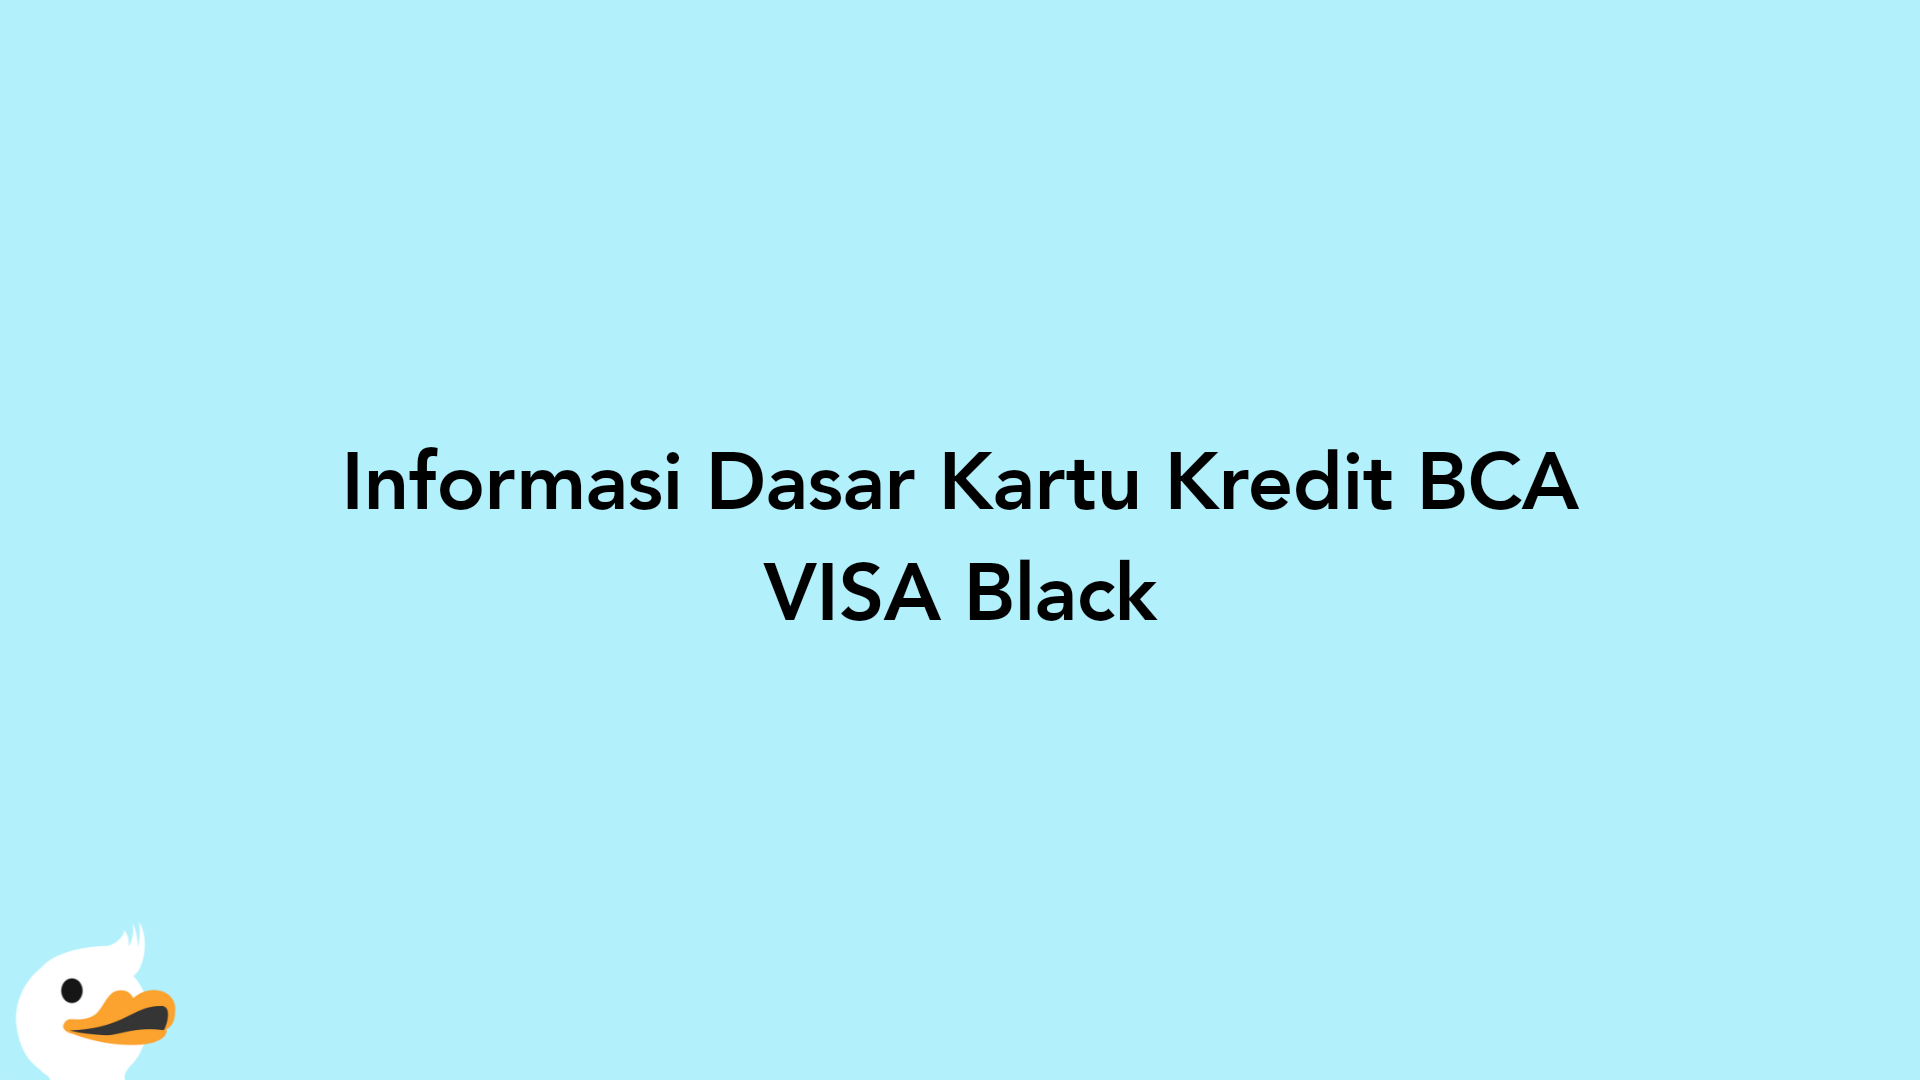 Informasi Dasar Kartu Kredit BCA VISA Black